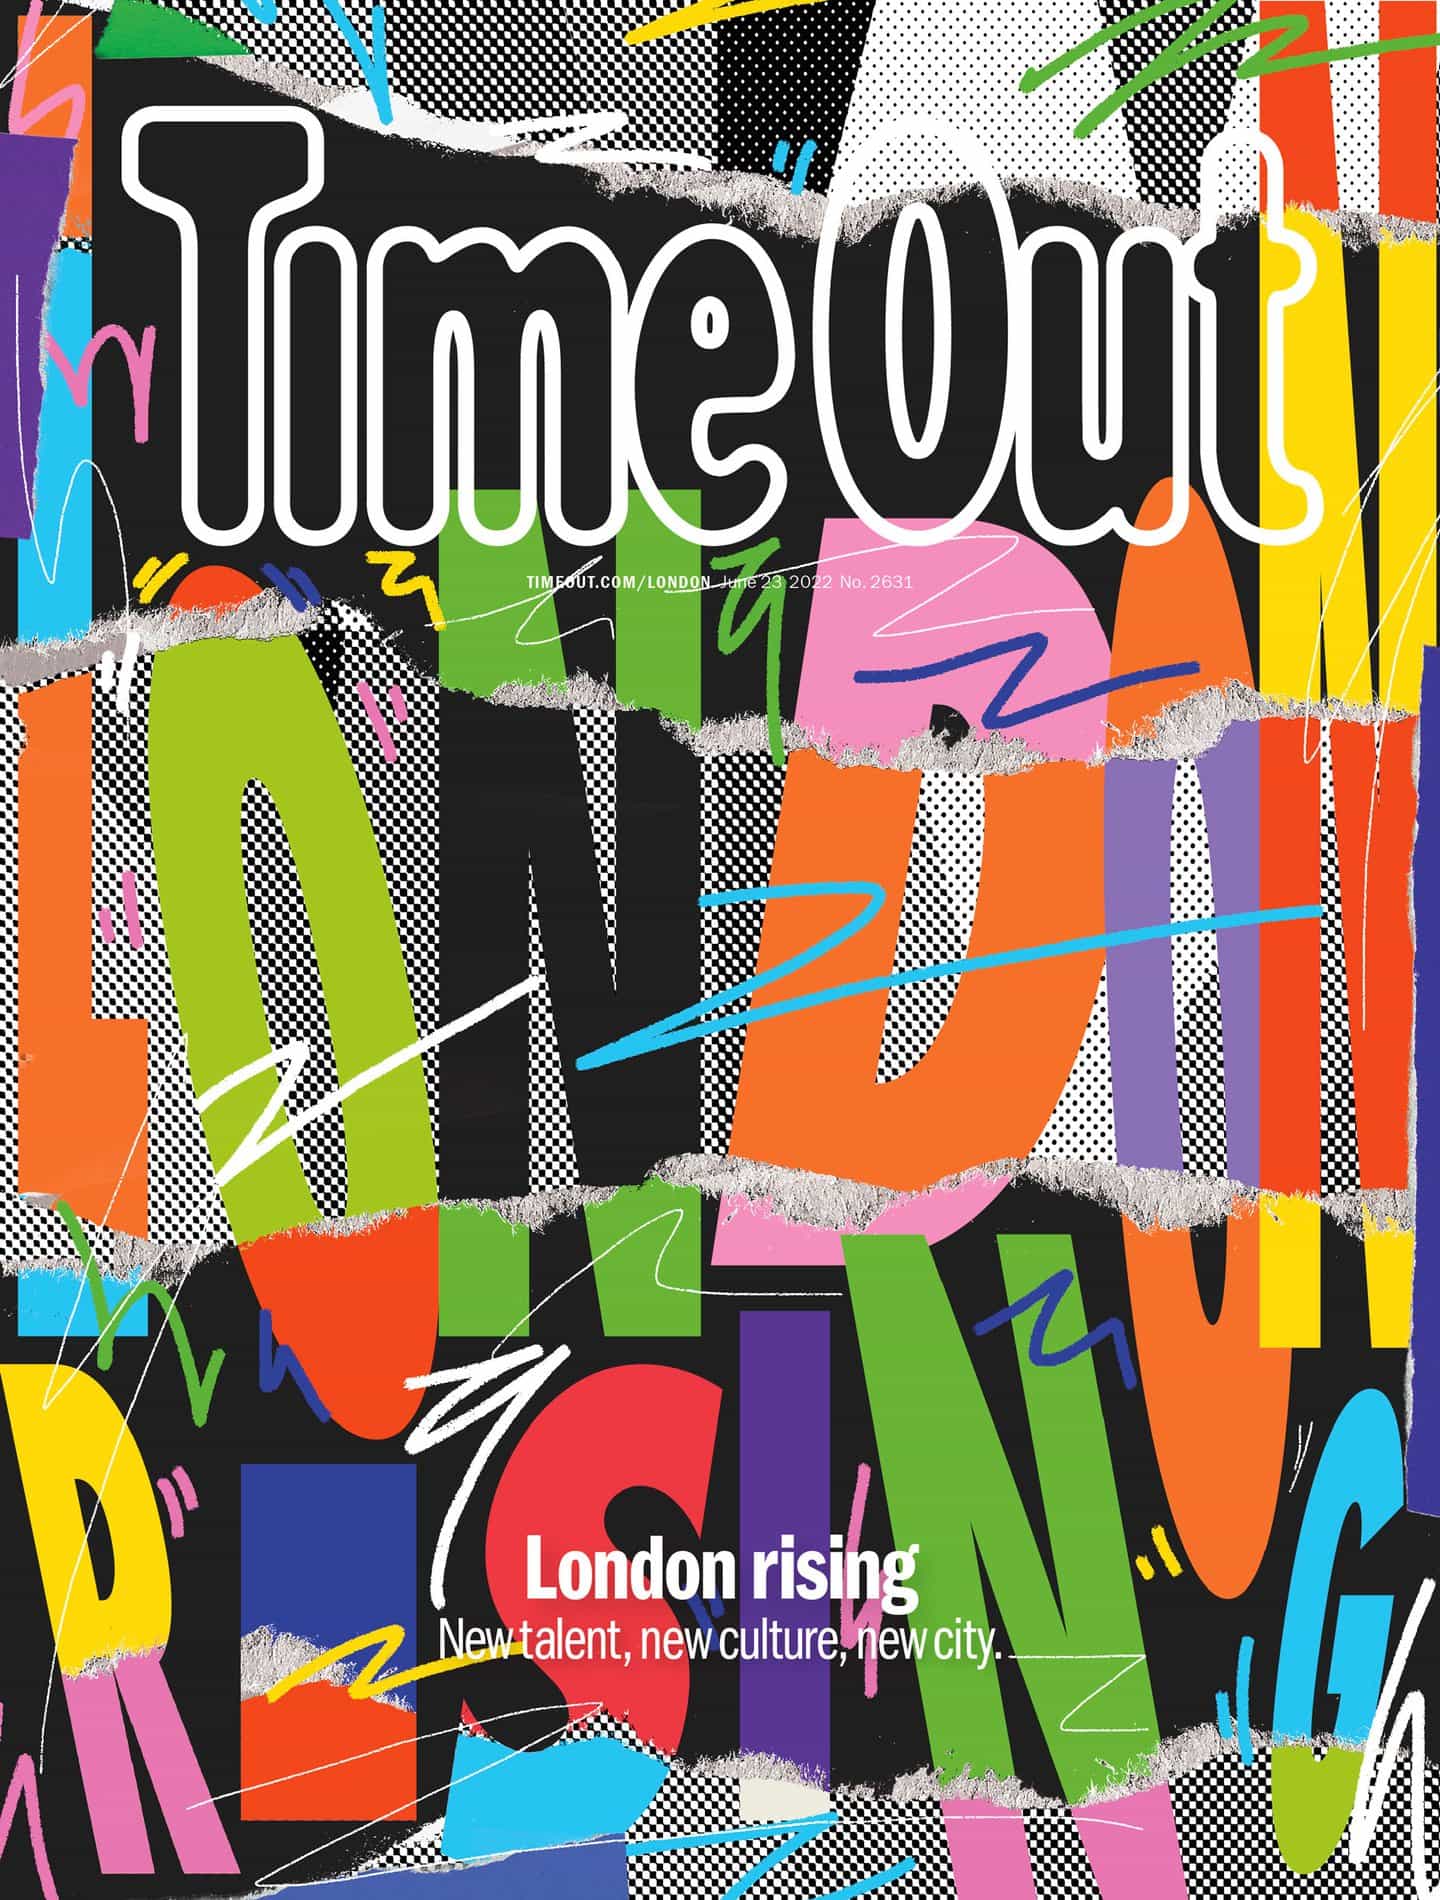 El director de arte de Time Out sobre la orquestación de una carta de amor ilustrada a Londres para su última edición impresa